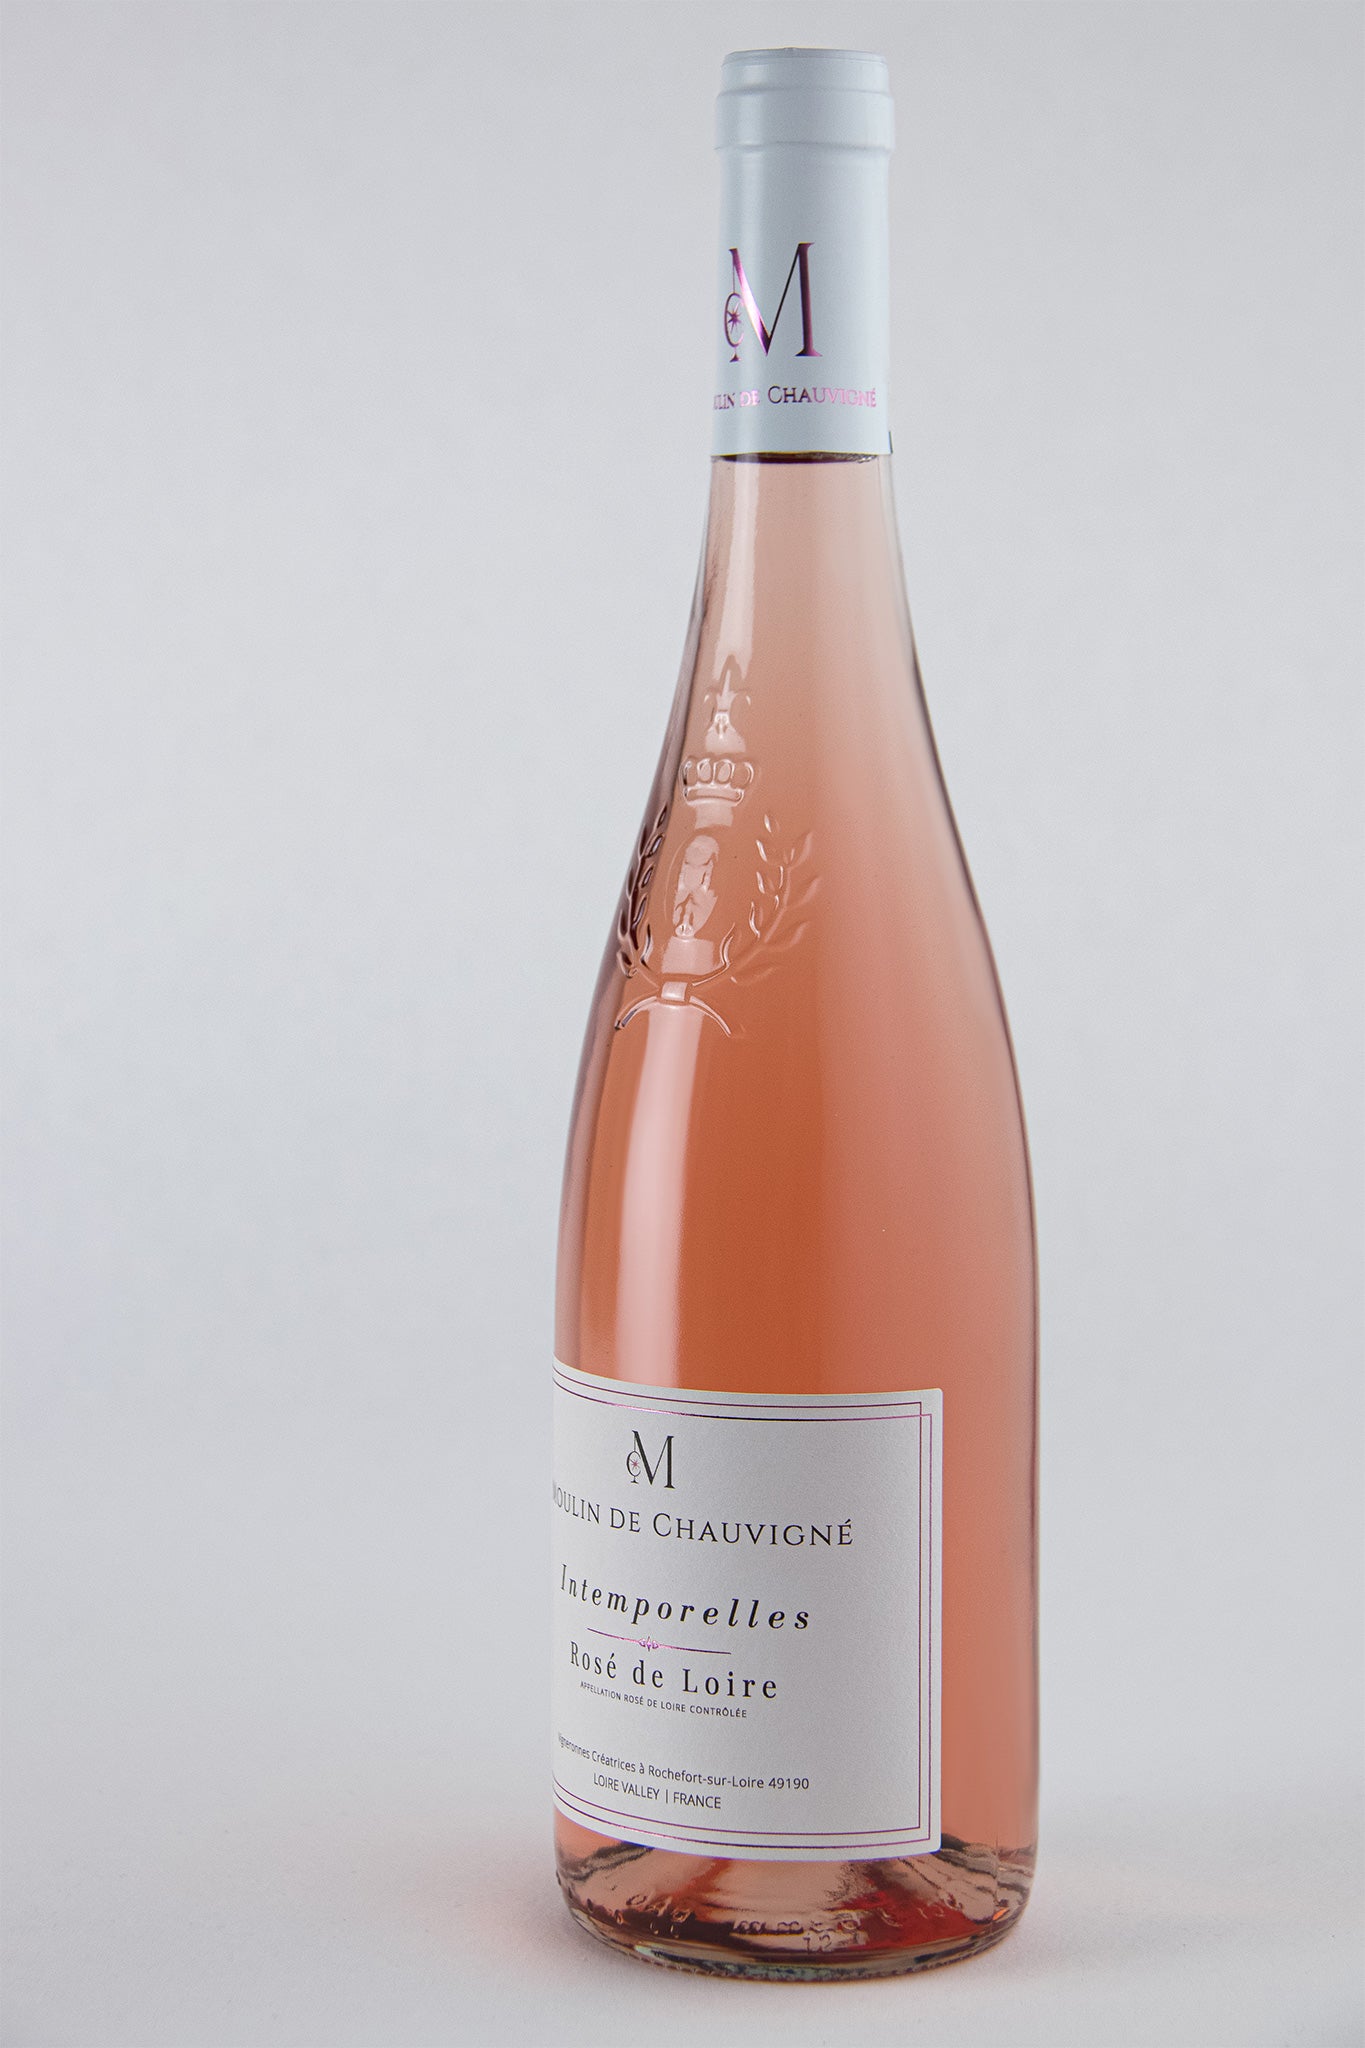 Intemporelles Rosé de Loire